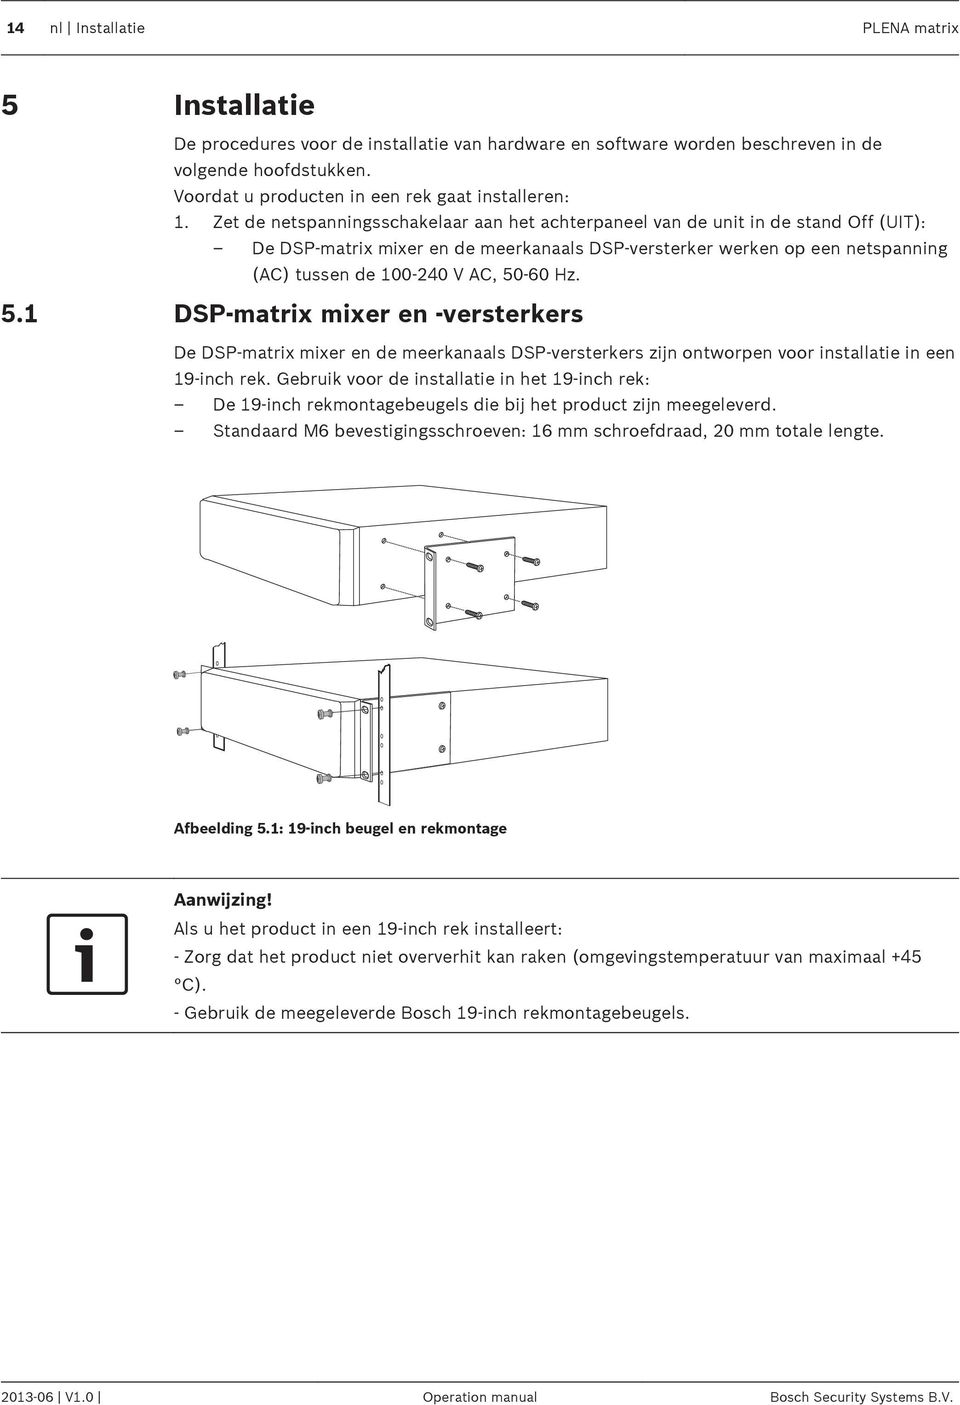 Zet de netspanningsschakelaar aan het achterpaneel van de unit in de stand Off (UIT): De DSP-matrix mixer en de meerkanaals DSP-versterker werken op een netspanning (AC) tussen de 100-240 V AC, 50-60